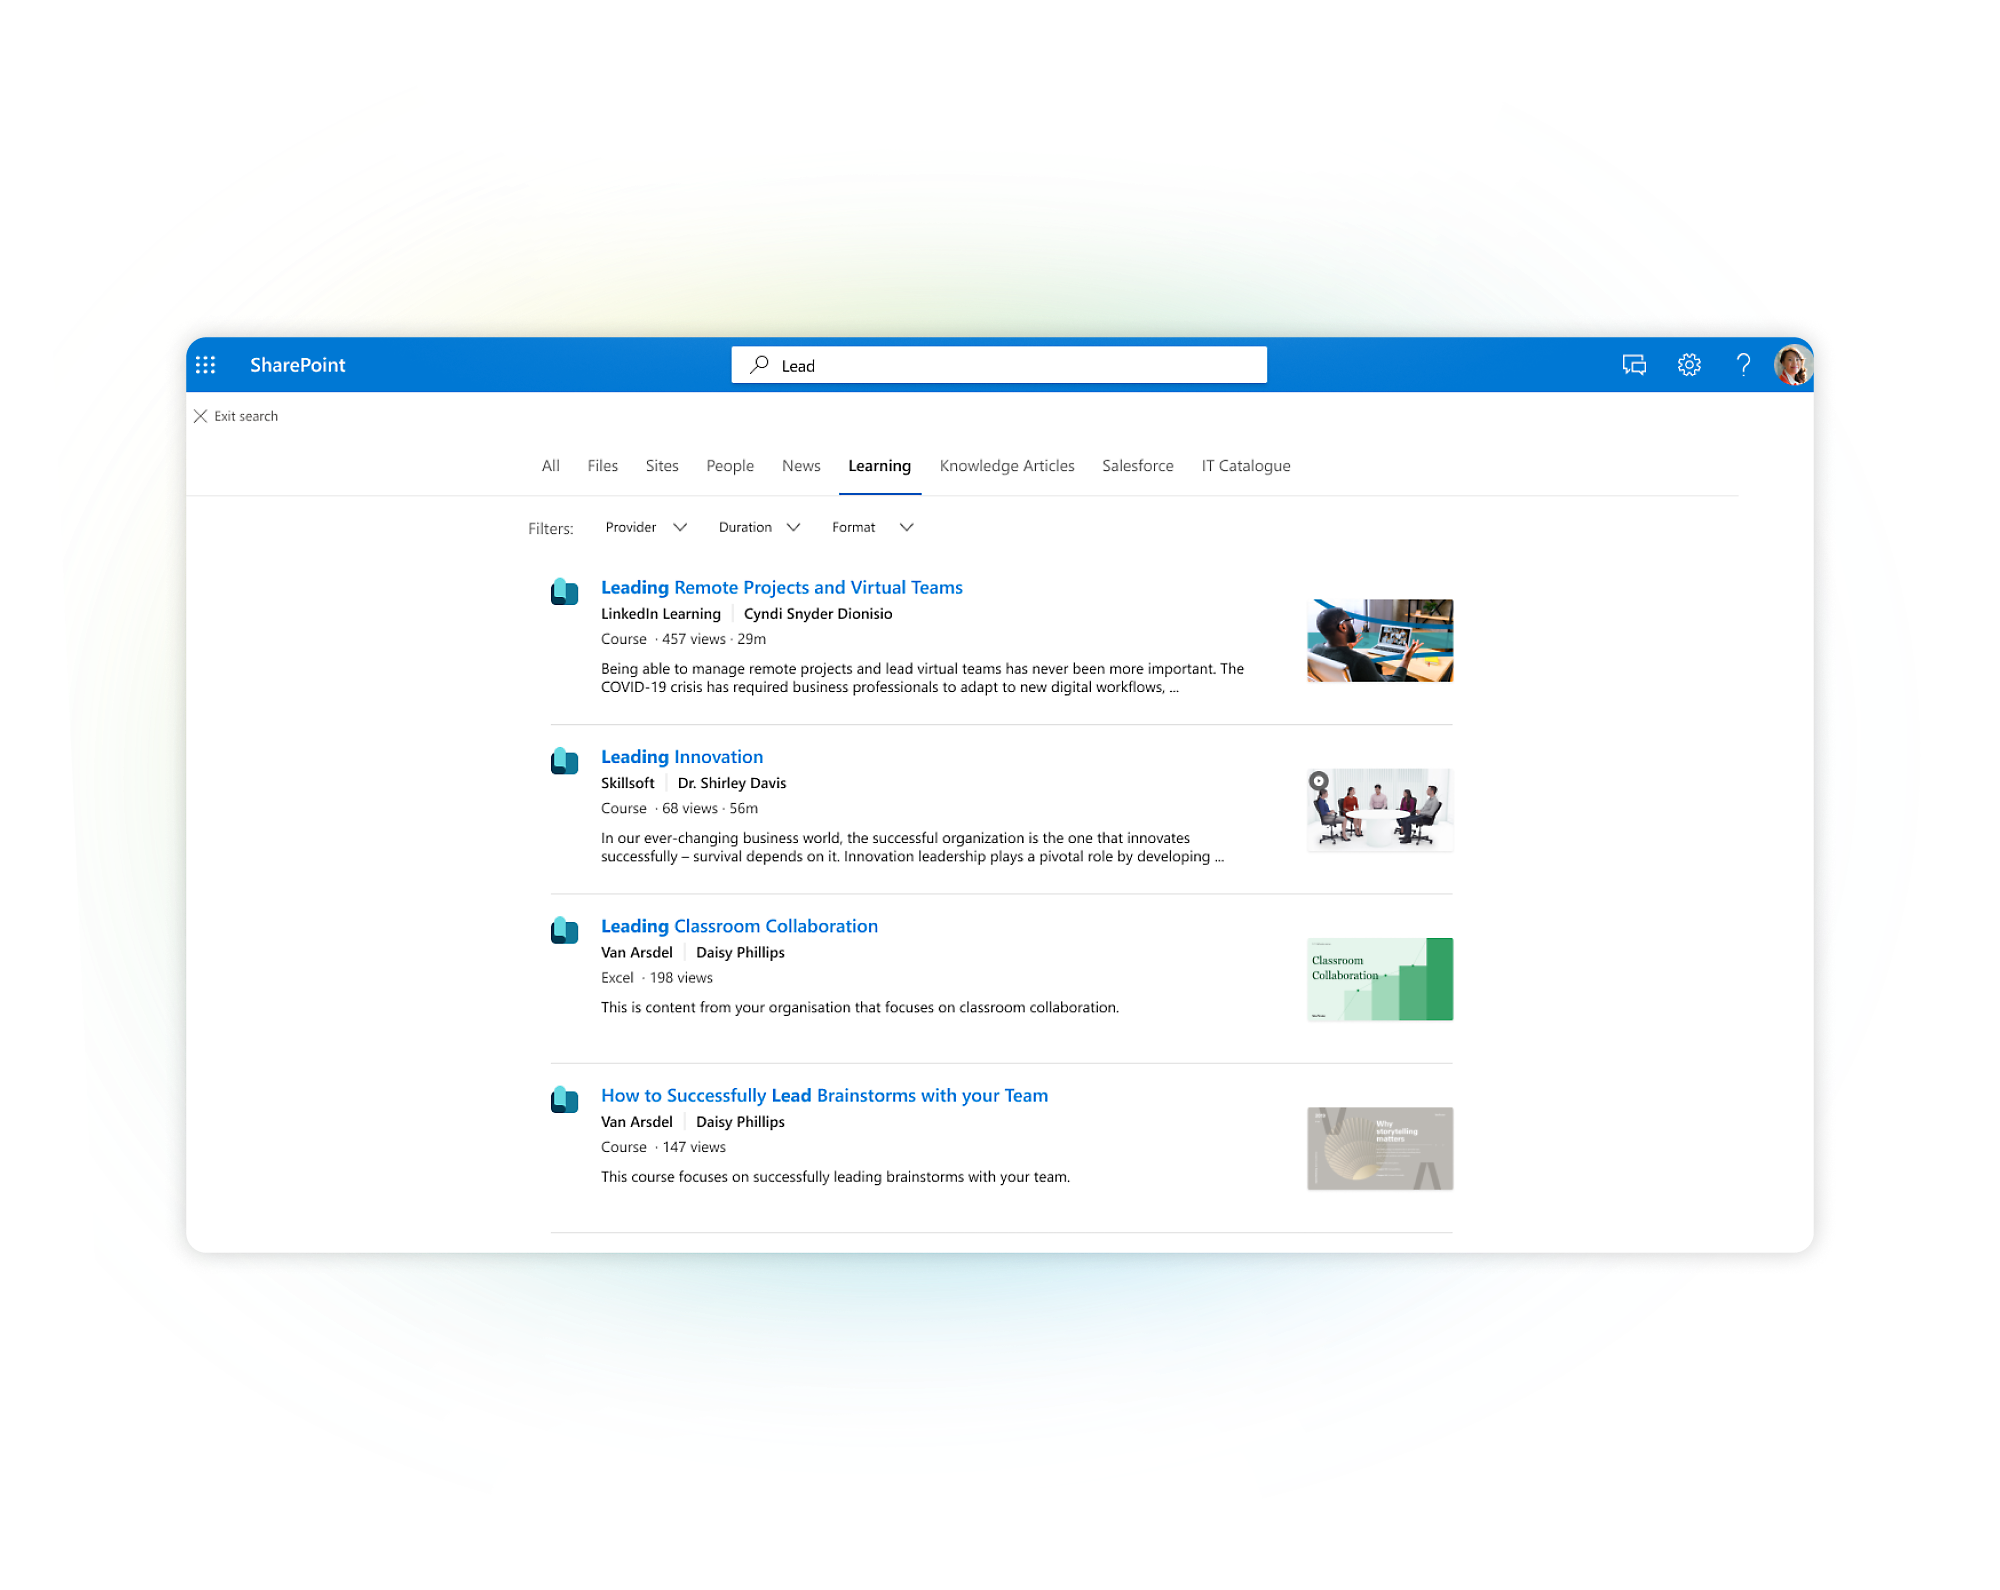 Navigacija SharePoint: Datoteke, spletna mesta, ljudje. Tečaji vključujejo projekte na daljavo, inovacije, sodelovanje v učilnici, brainstorming